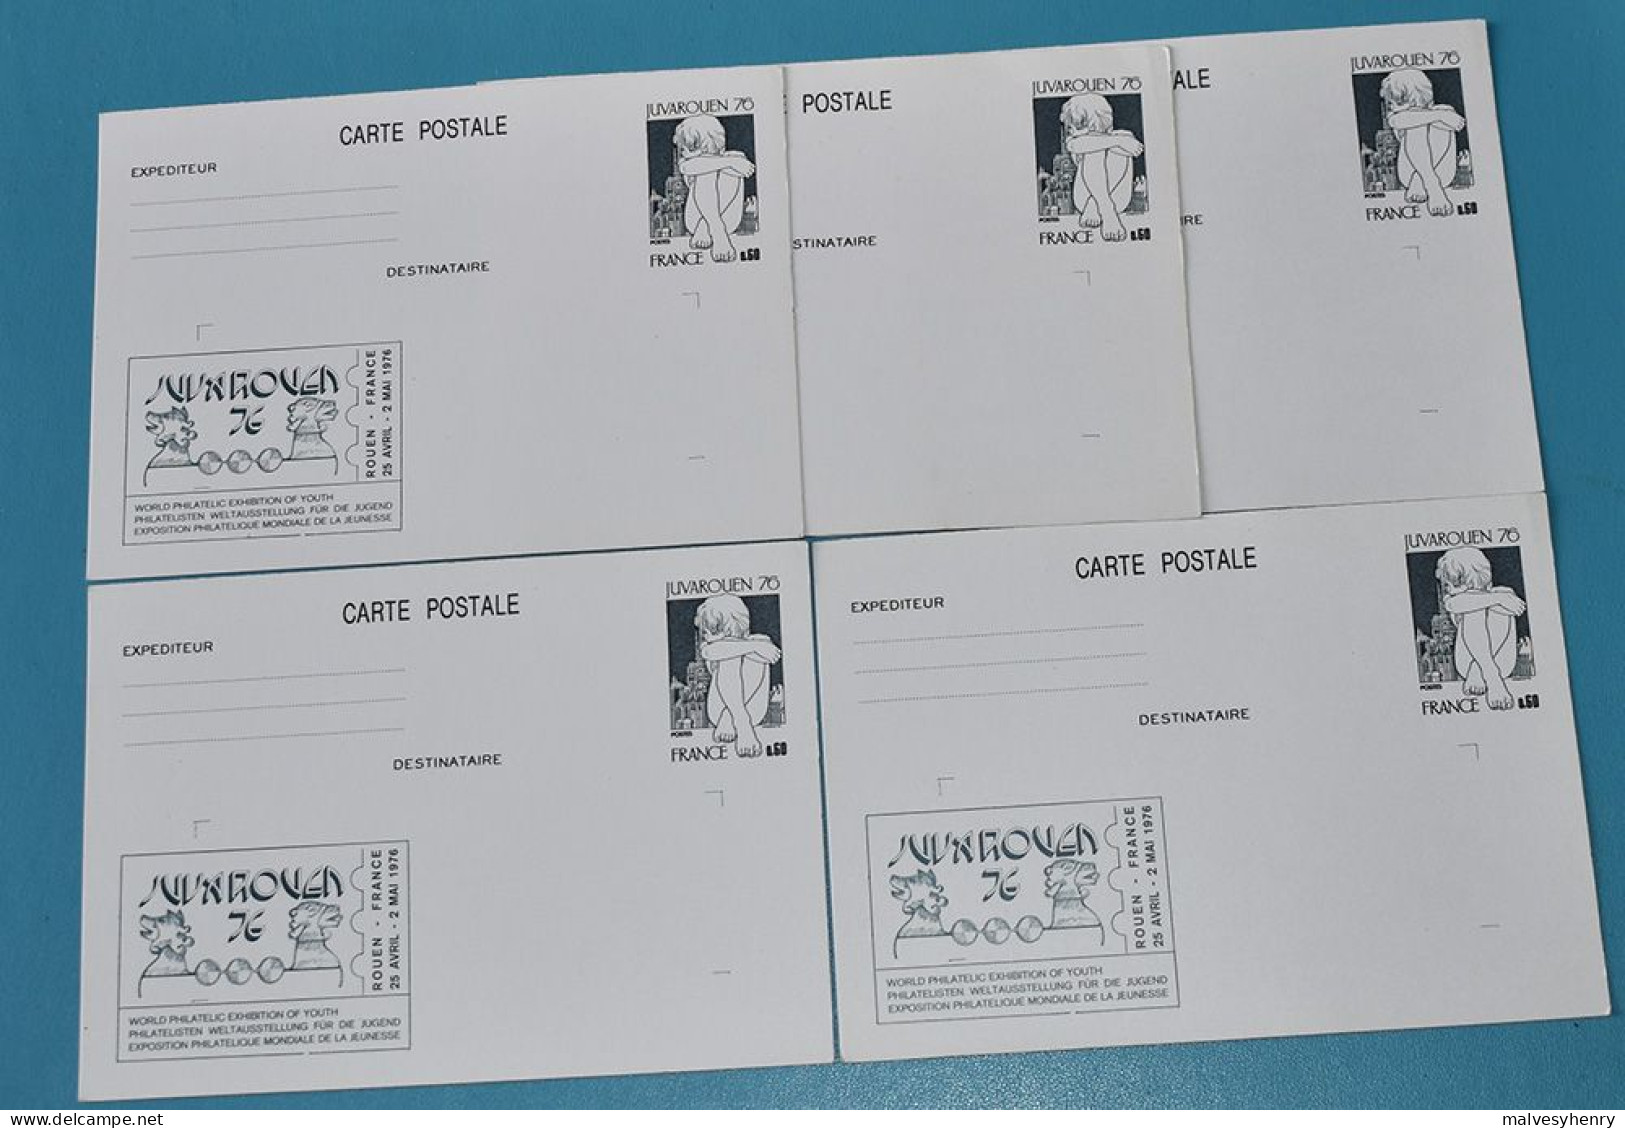 JUVAROUEN 1976 - 5 CARTES POSTALES NEUVES REPIQUAGE - JUVAROUEN 76 - Cartes Postales Repiquages (avant 1995)